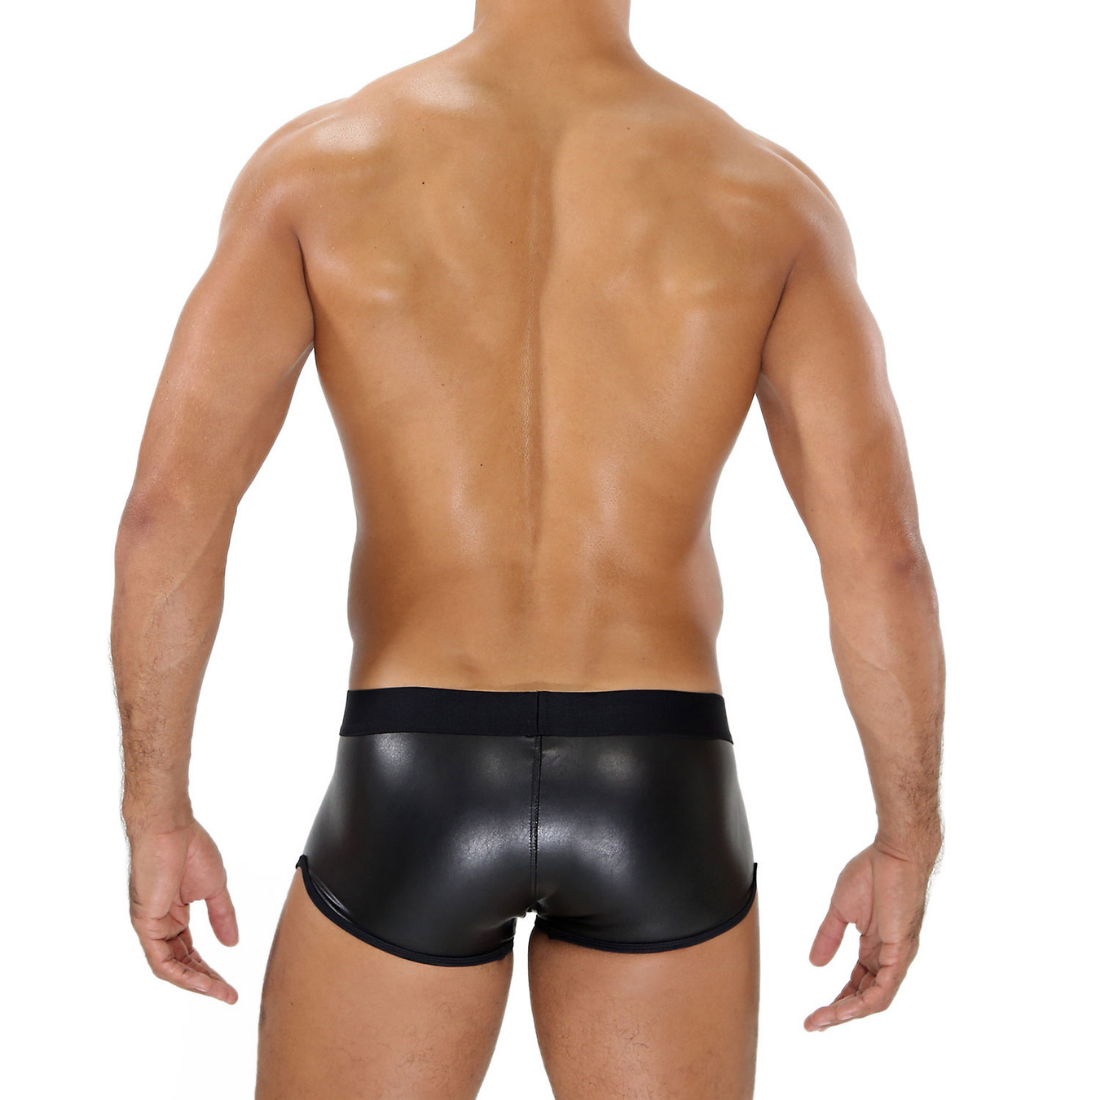 Zeer sexy zwarte vegan leather fetish boxer met zwarte tailleband en biezen, ontworpen door Tof Paris en te koop bij Flavourez.